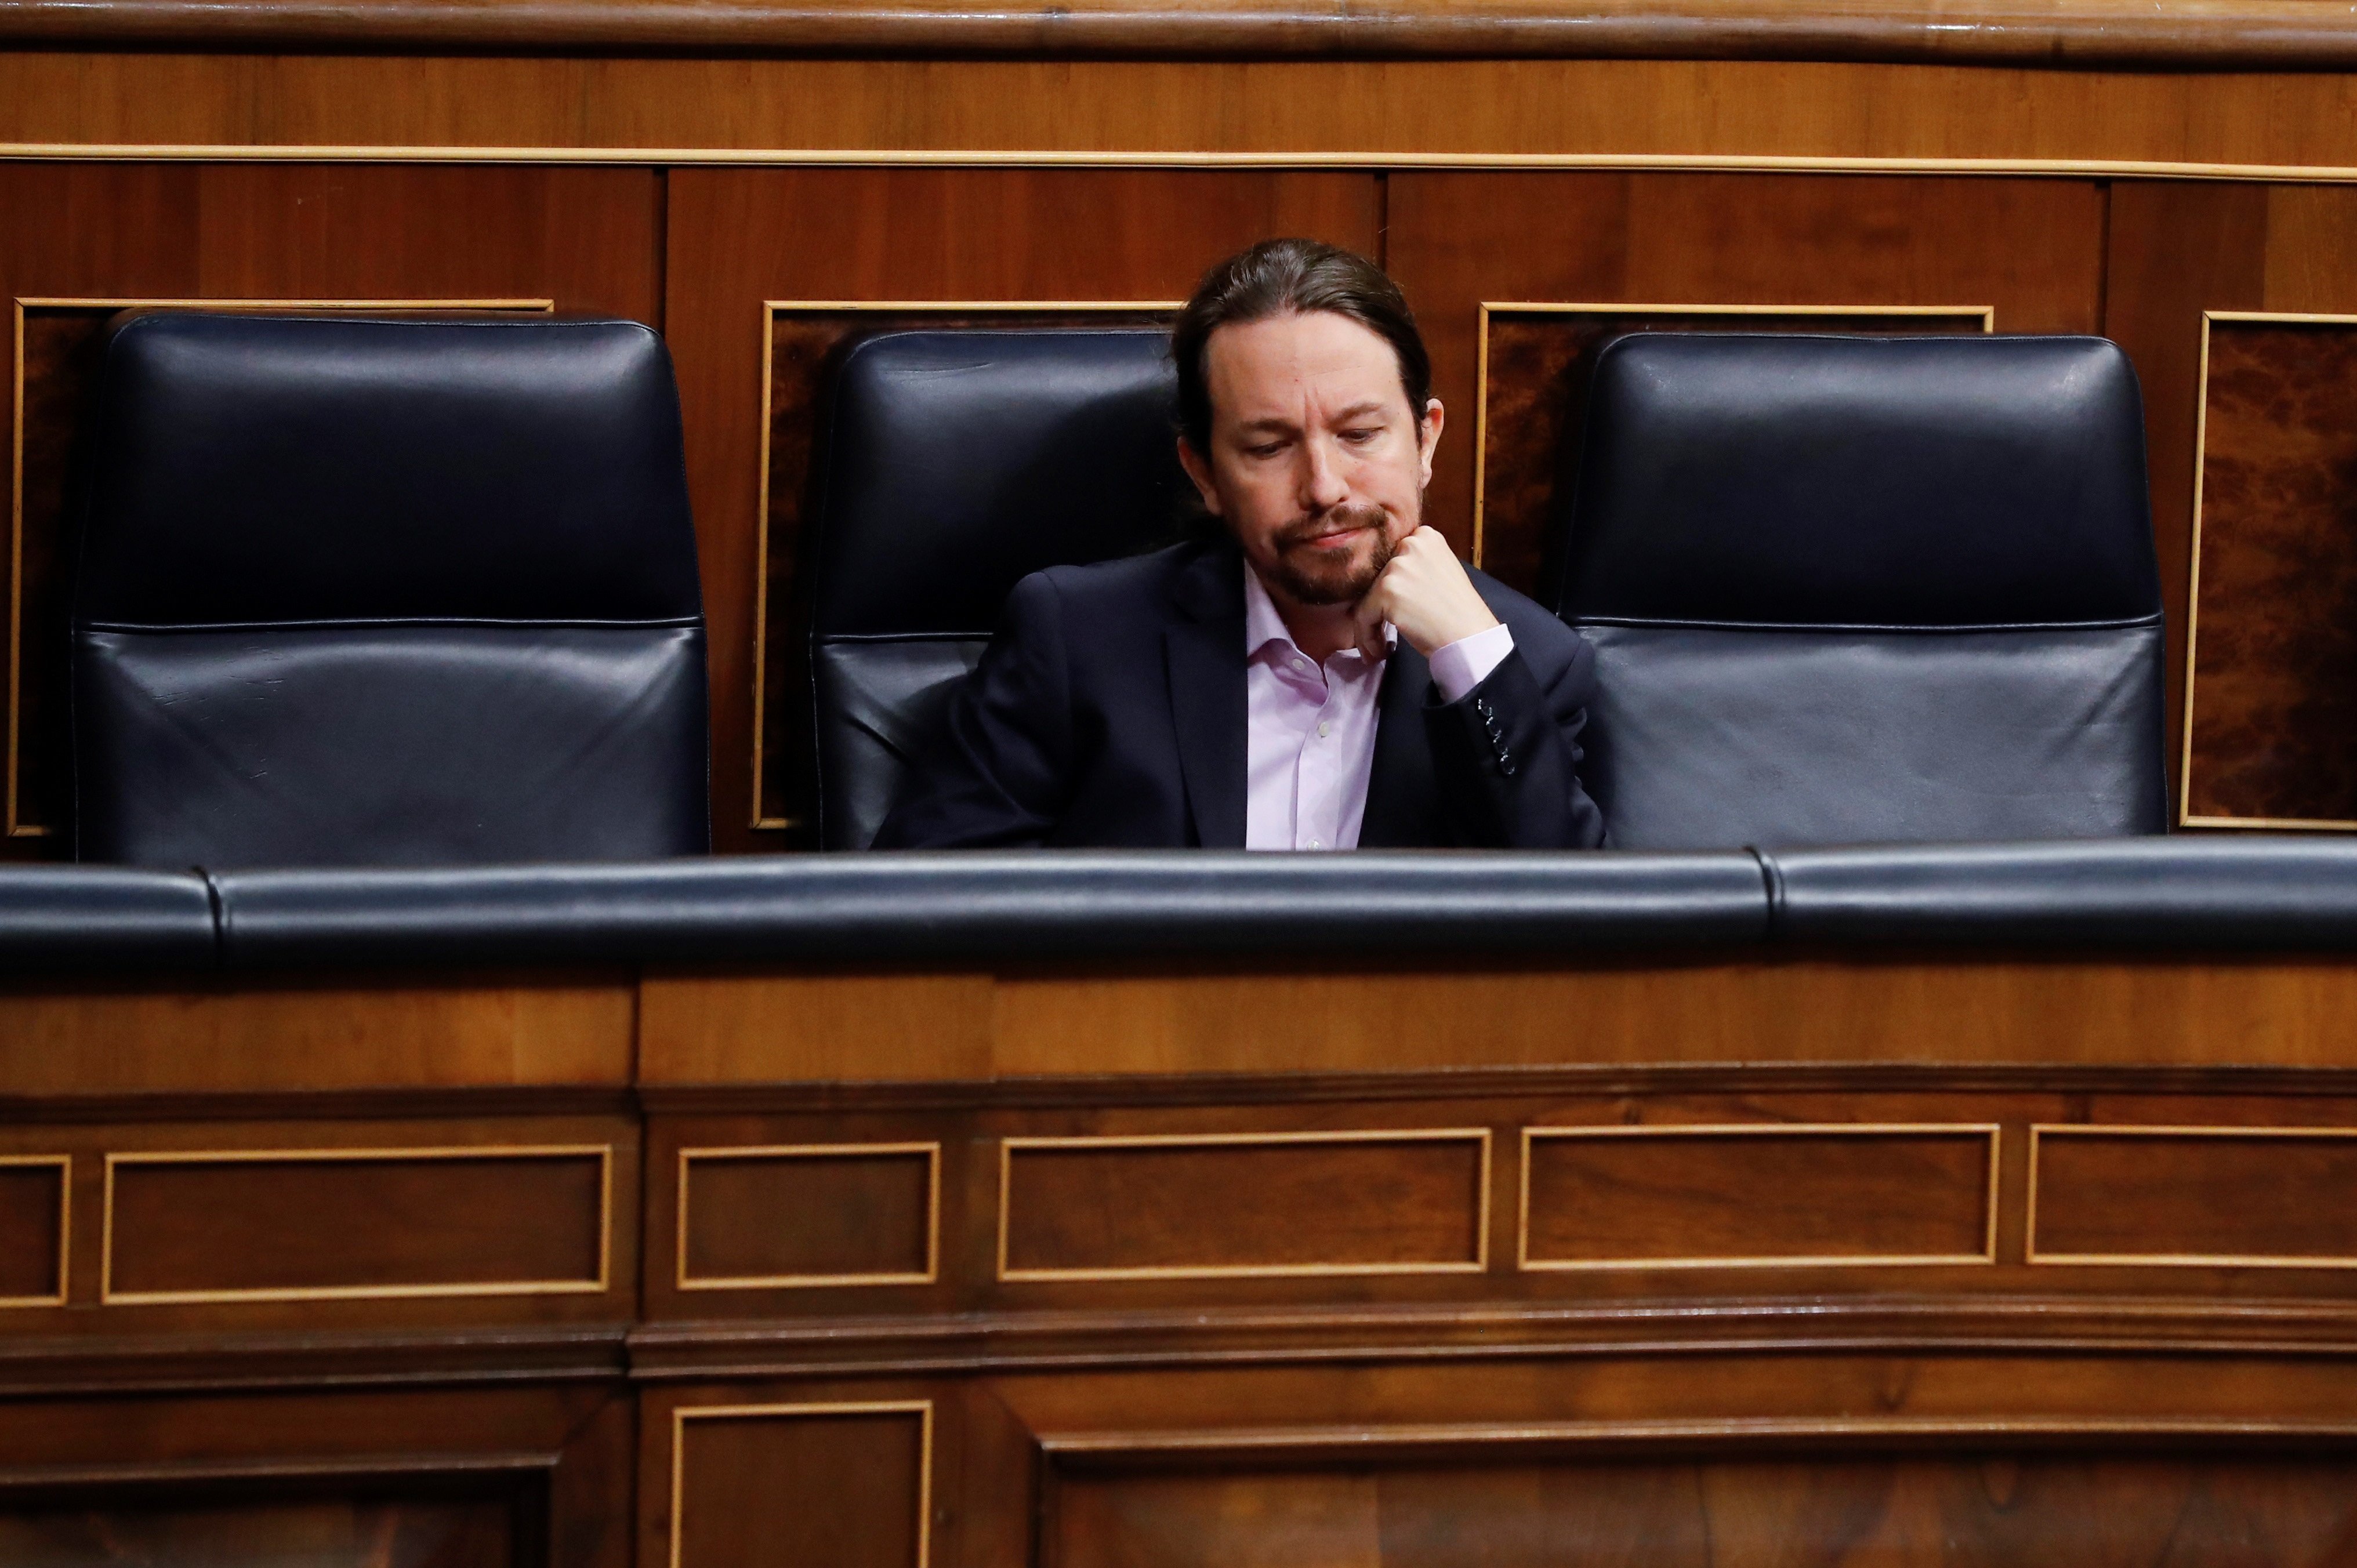 El hundimiento de Podemos: el territorio pasa factura a Iglesias